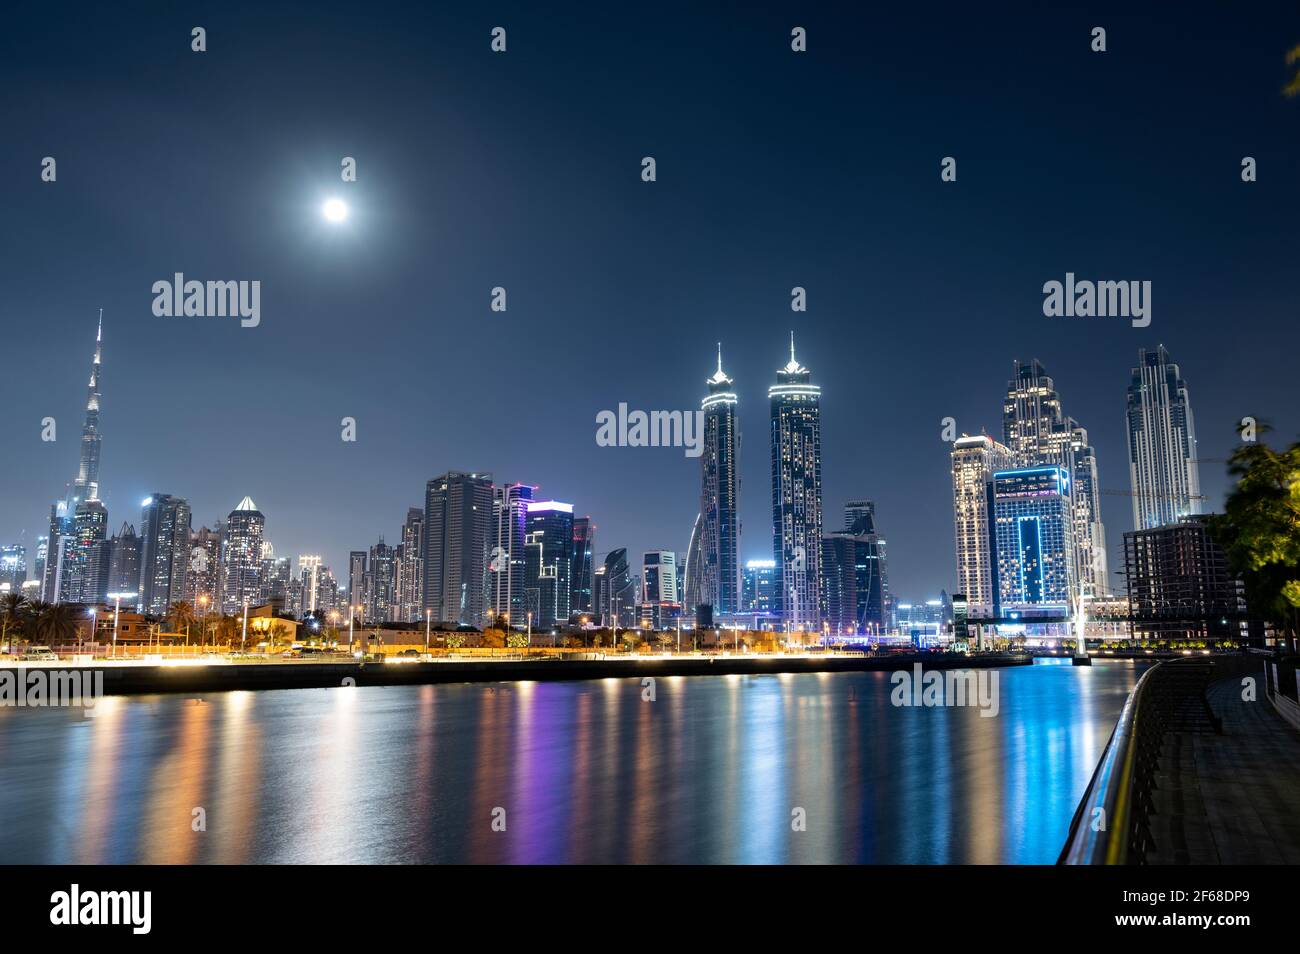 Vista panorámica del Burj Khalifa iluminado con otros skyscapers lanzando hermosas reflexiones sobre el agua capturada desde el paseo marítimo del canal de Dubai. Foto de stock